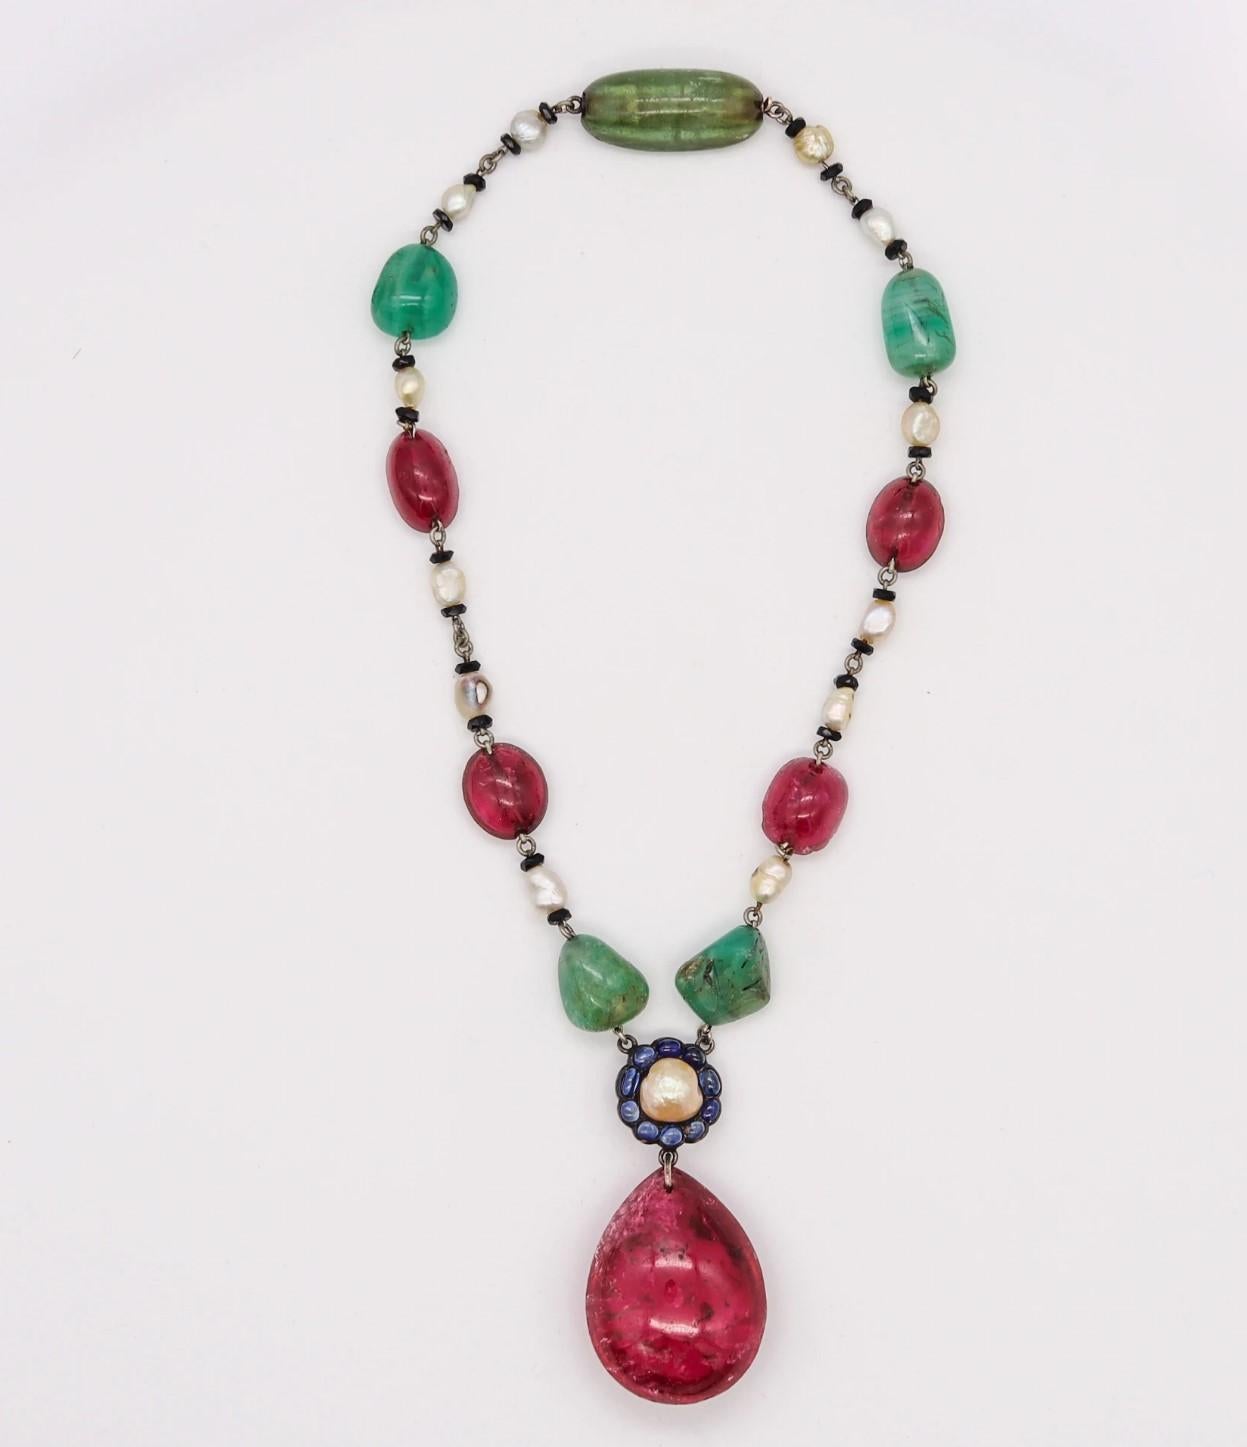 Art Deco Halskette mit Juwelen im Mughal-Stil.

Ein wunderschönes und farbenfrohes Stück, das wahrscheinlich in England während der Art-Déco-Periode in den 1920er Jahren entstand. Diese sehr ungewöhnliche und auffällige Halskette wurde im Mughal